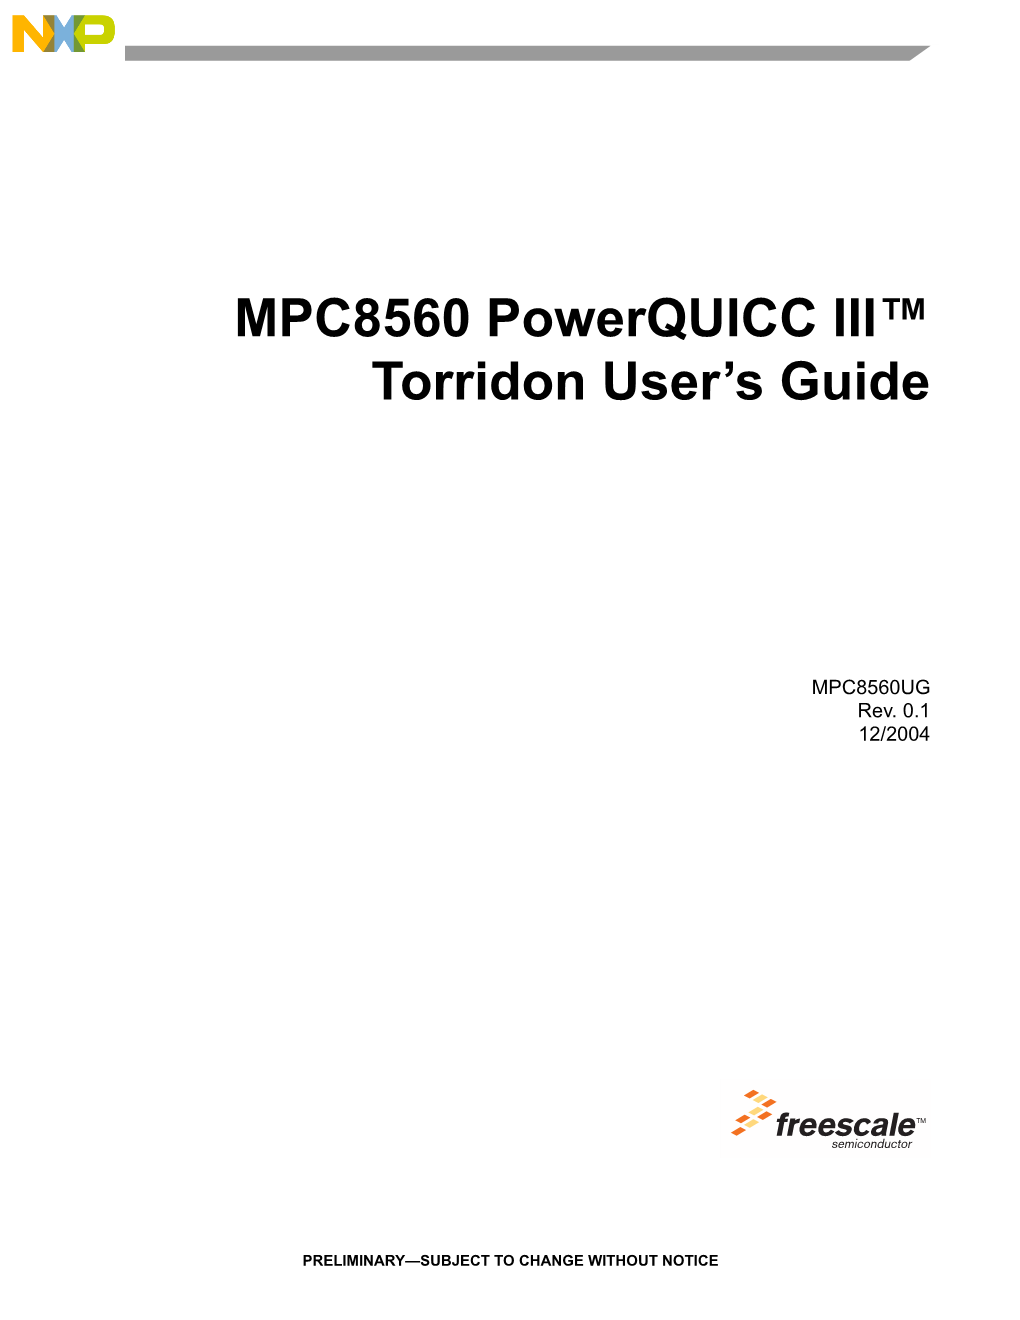 MPC8560 Powerquicc III Torridon User's Guide